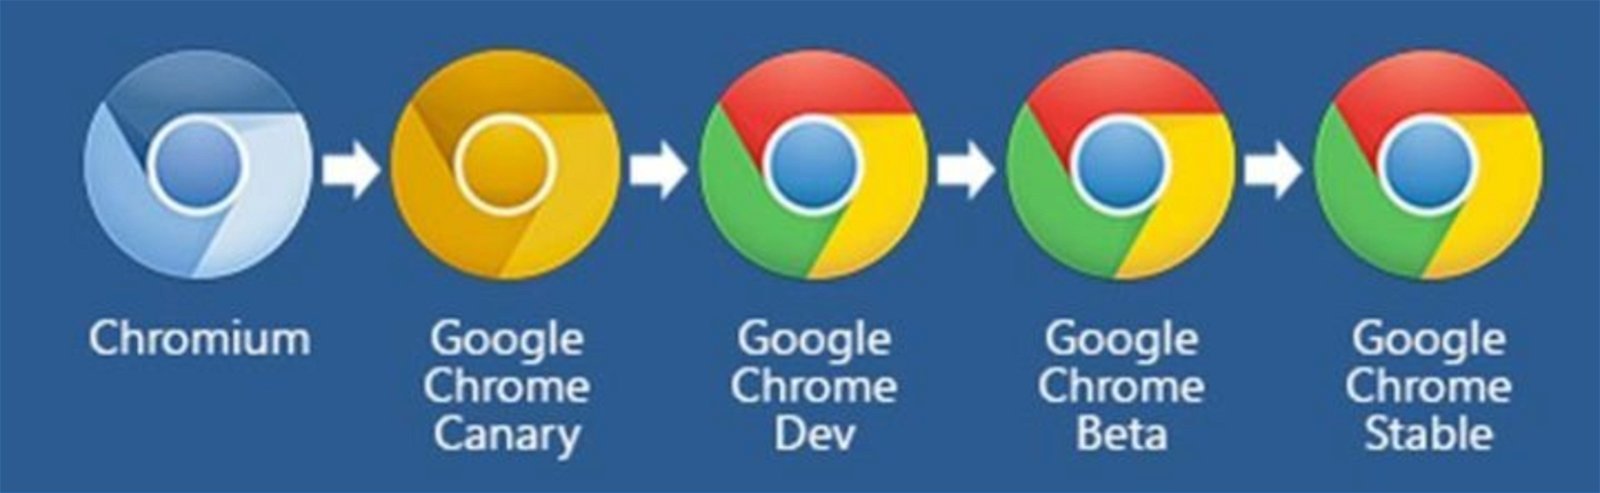 Hay 5 versiones de Google Chrome distintas, y estas son las diferencias